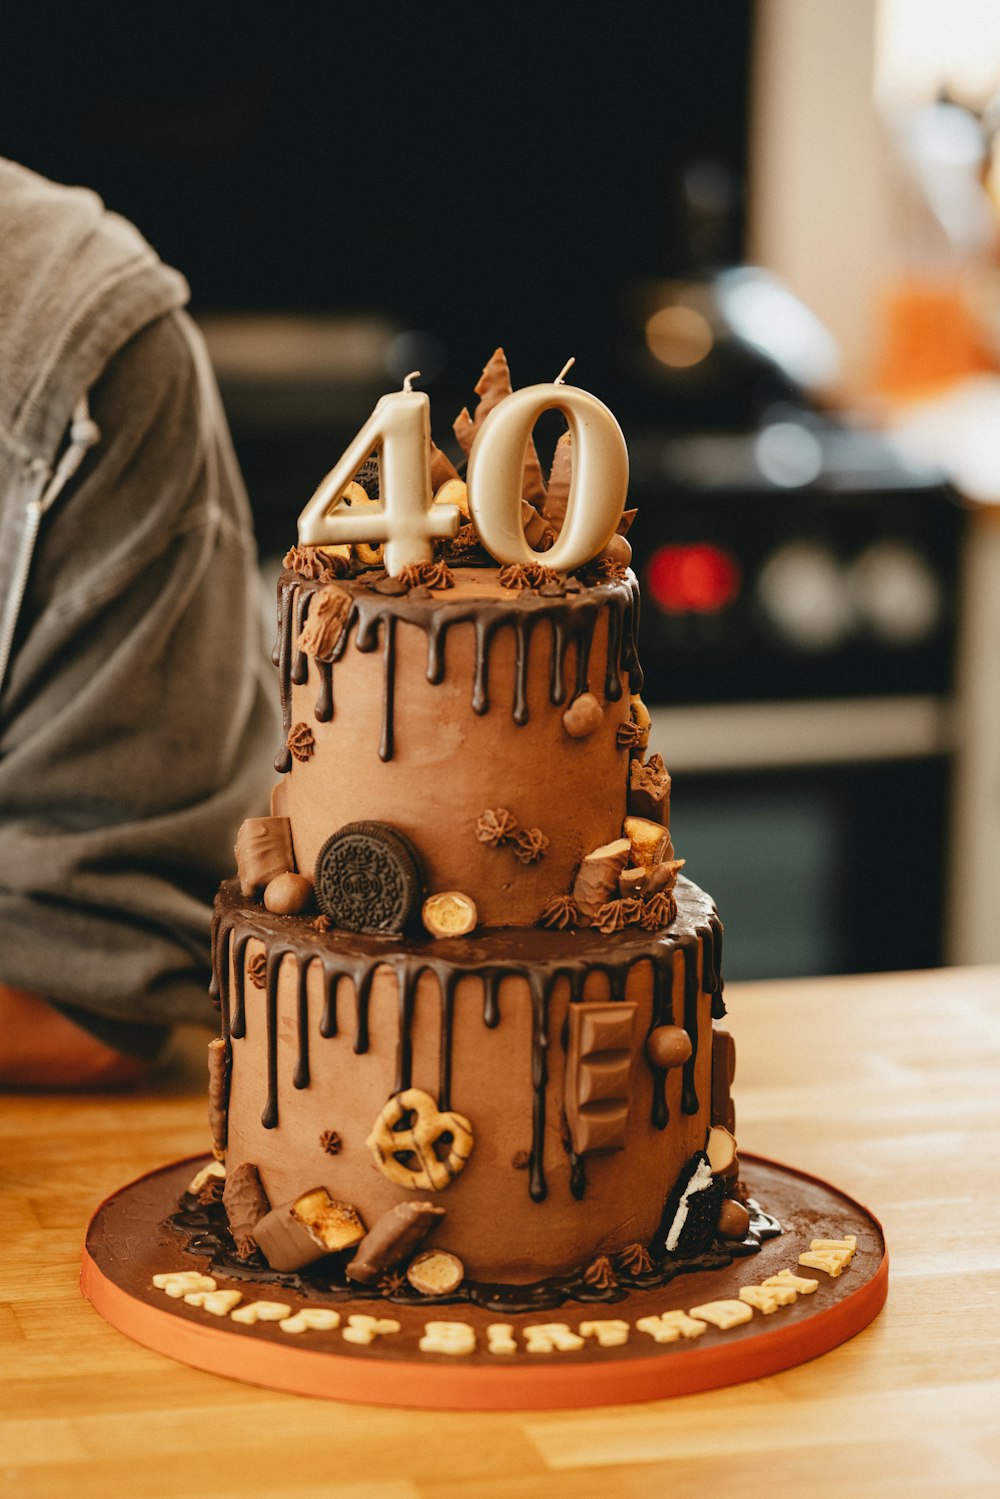 위에 흰색 장식이 있는 갈색 세라믹 컵케이크